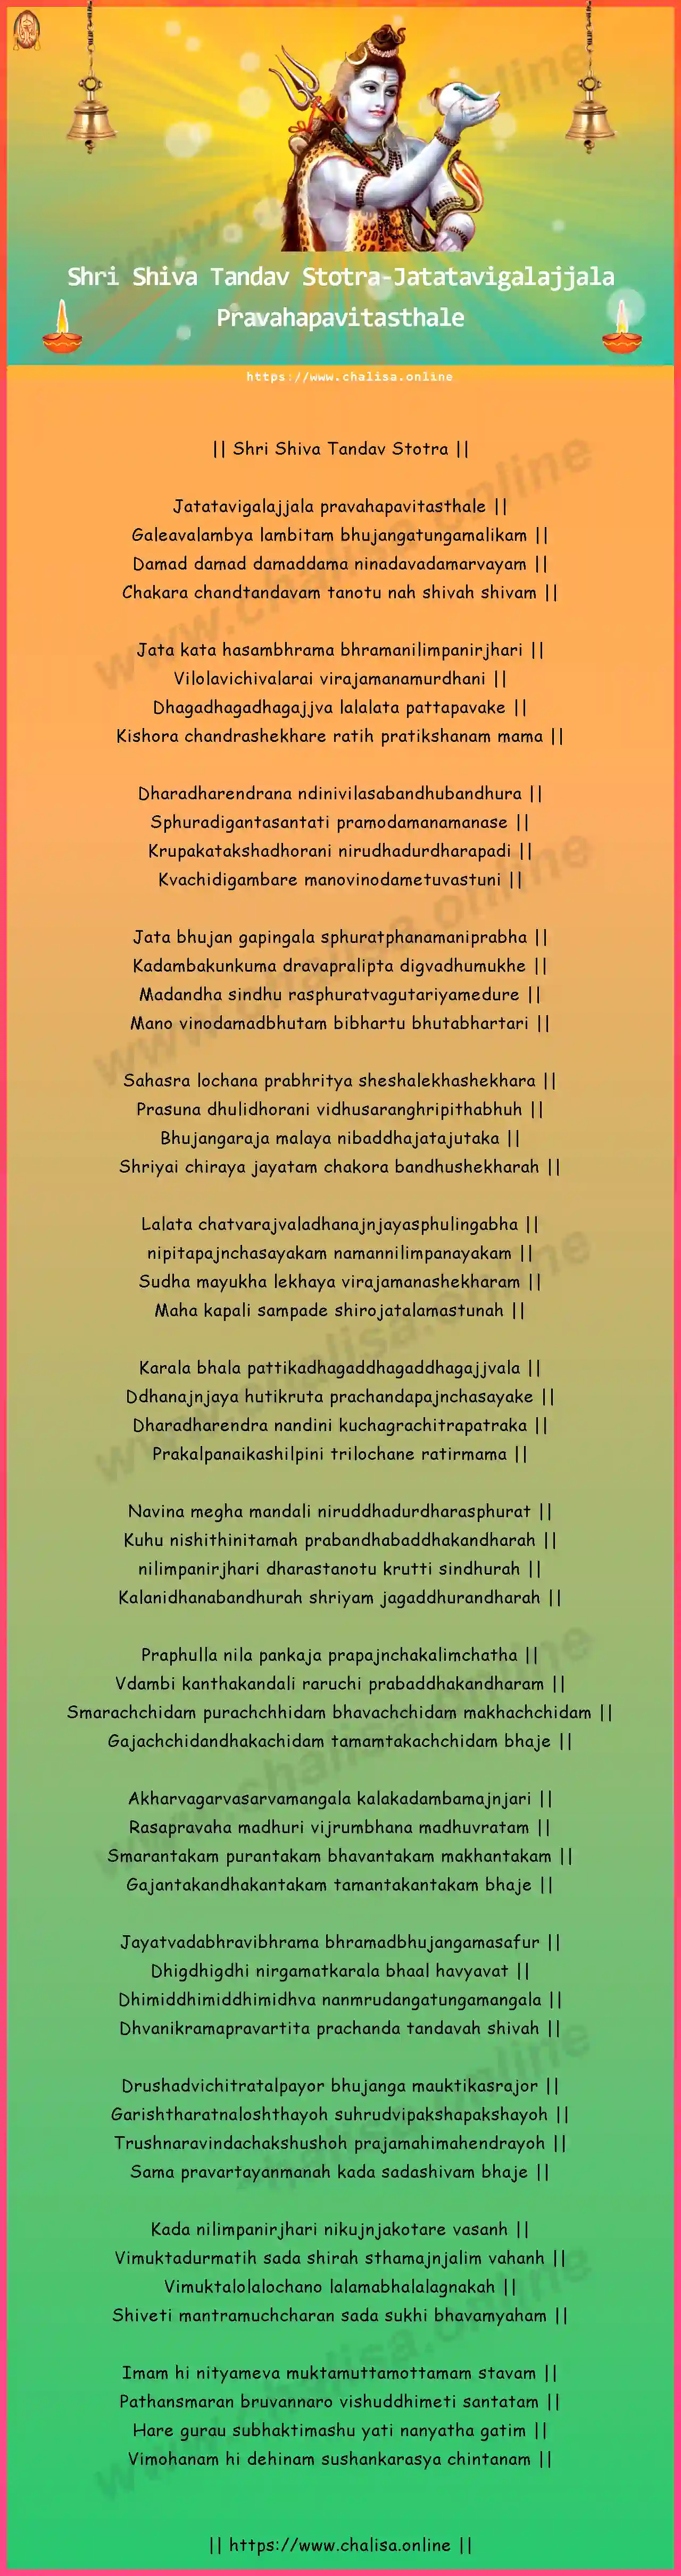 jatatavigalajjala-shri-shiva-tandav-stotra-english-lyrics-download